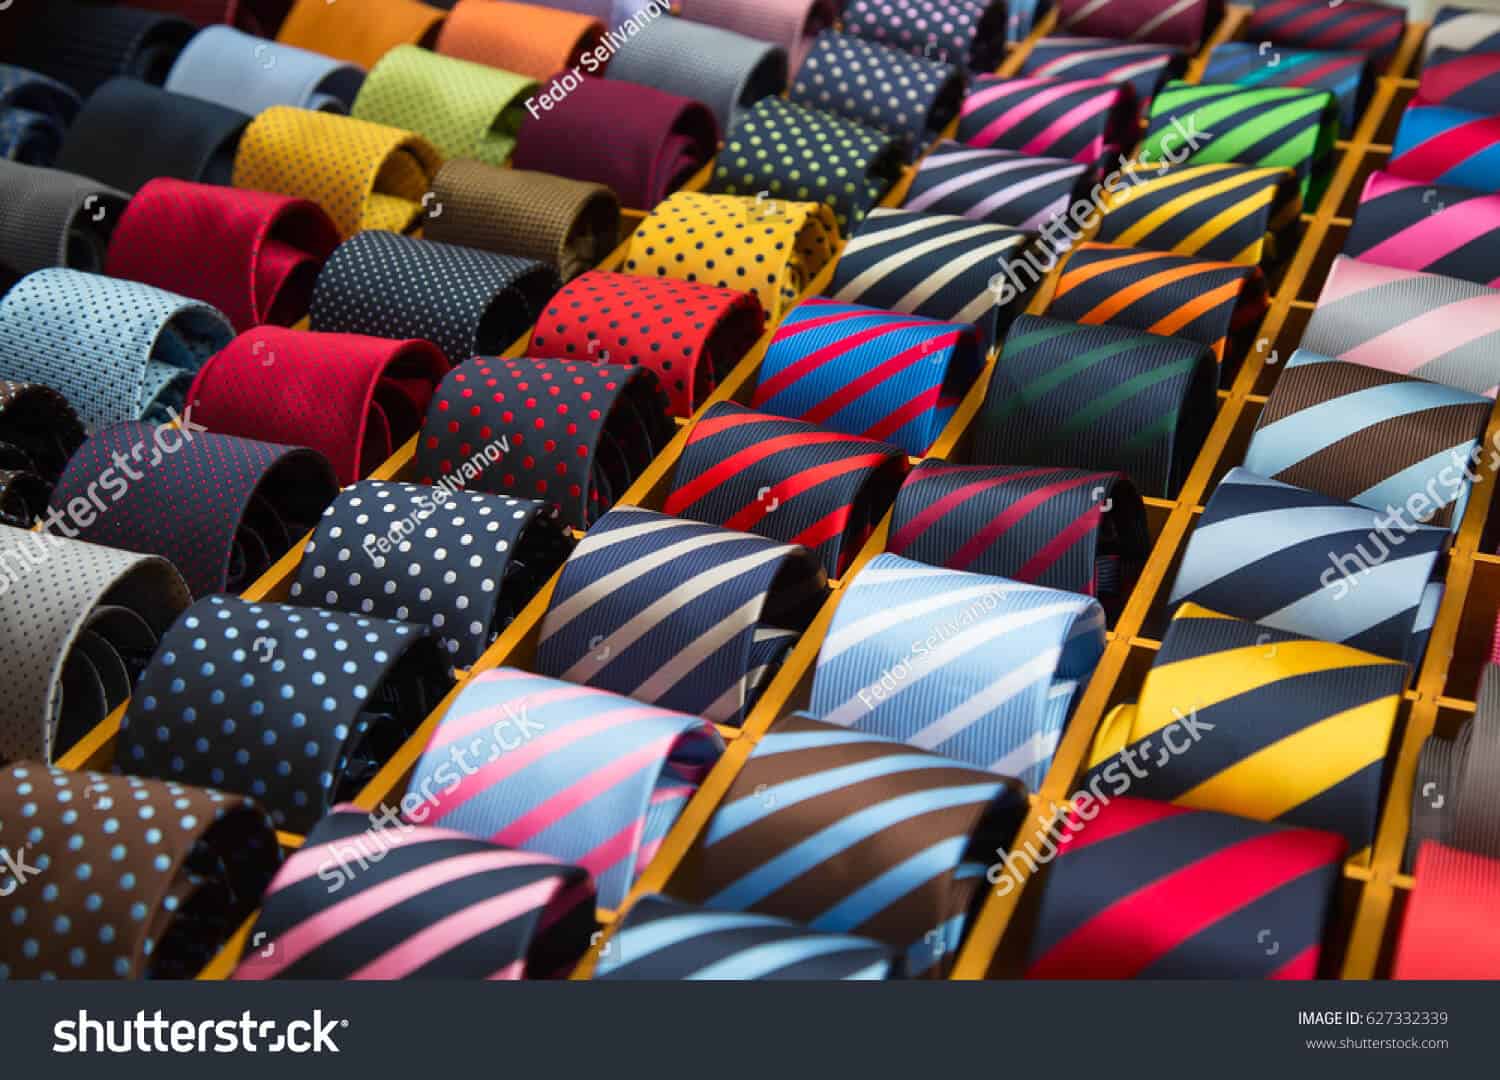 195 ngàn hình ảnh thời trang nam chất lượng cao trên Shutterstock